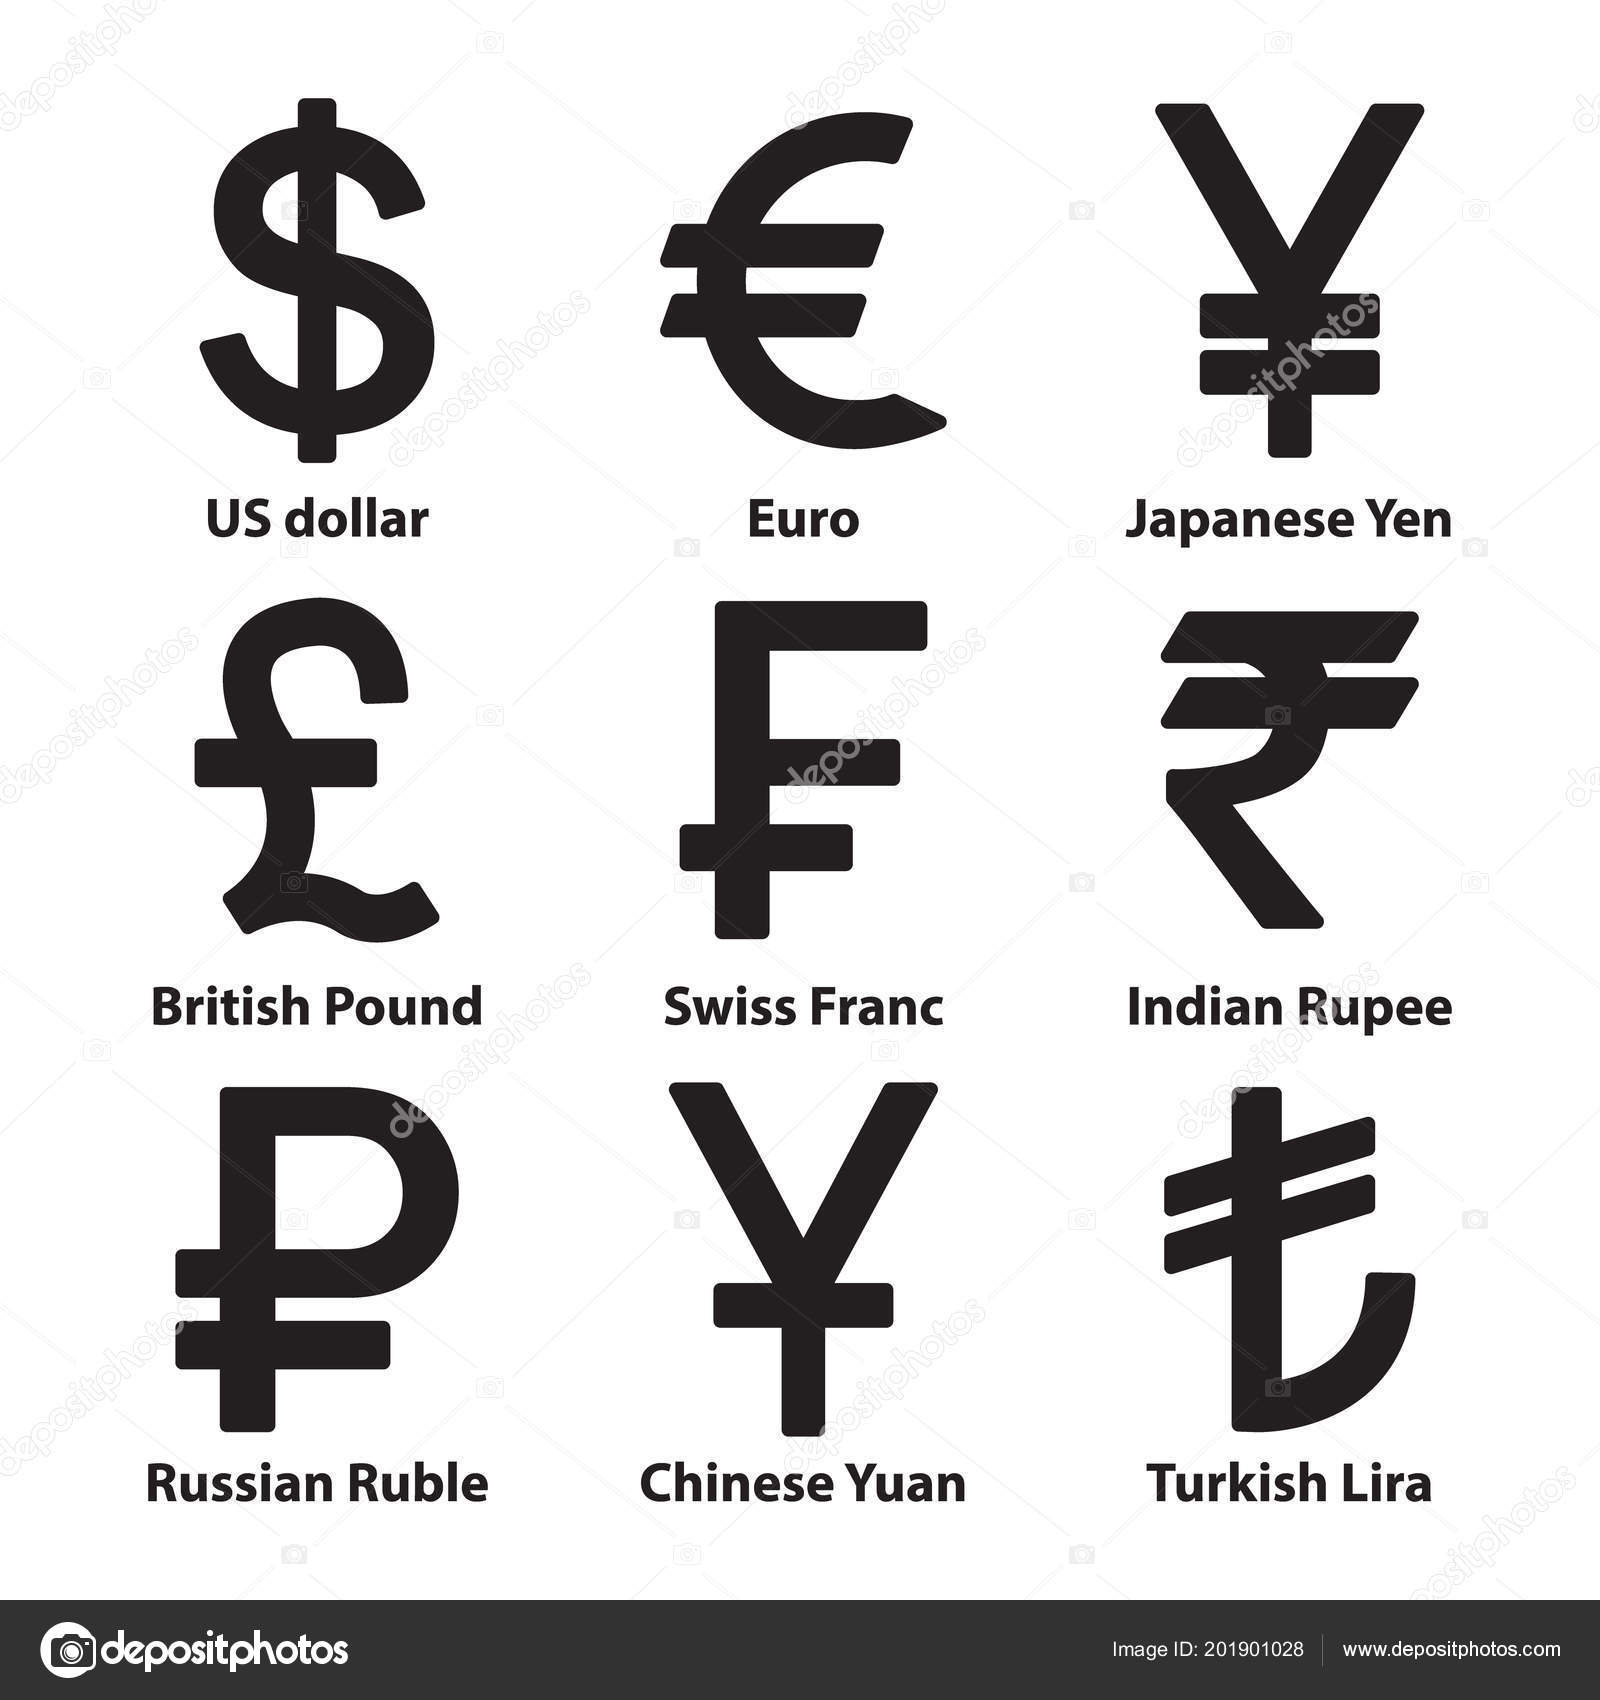 Денежный знак таблица. Как обозначается китайская валюта юань. Китайский юань символ валюты. Юань обозначение валюты символ.